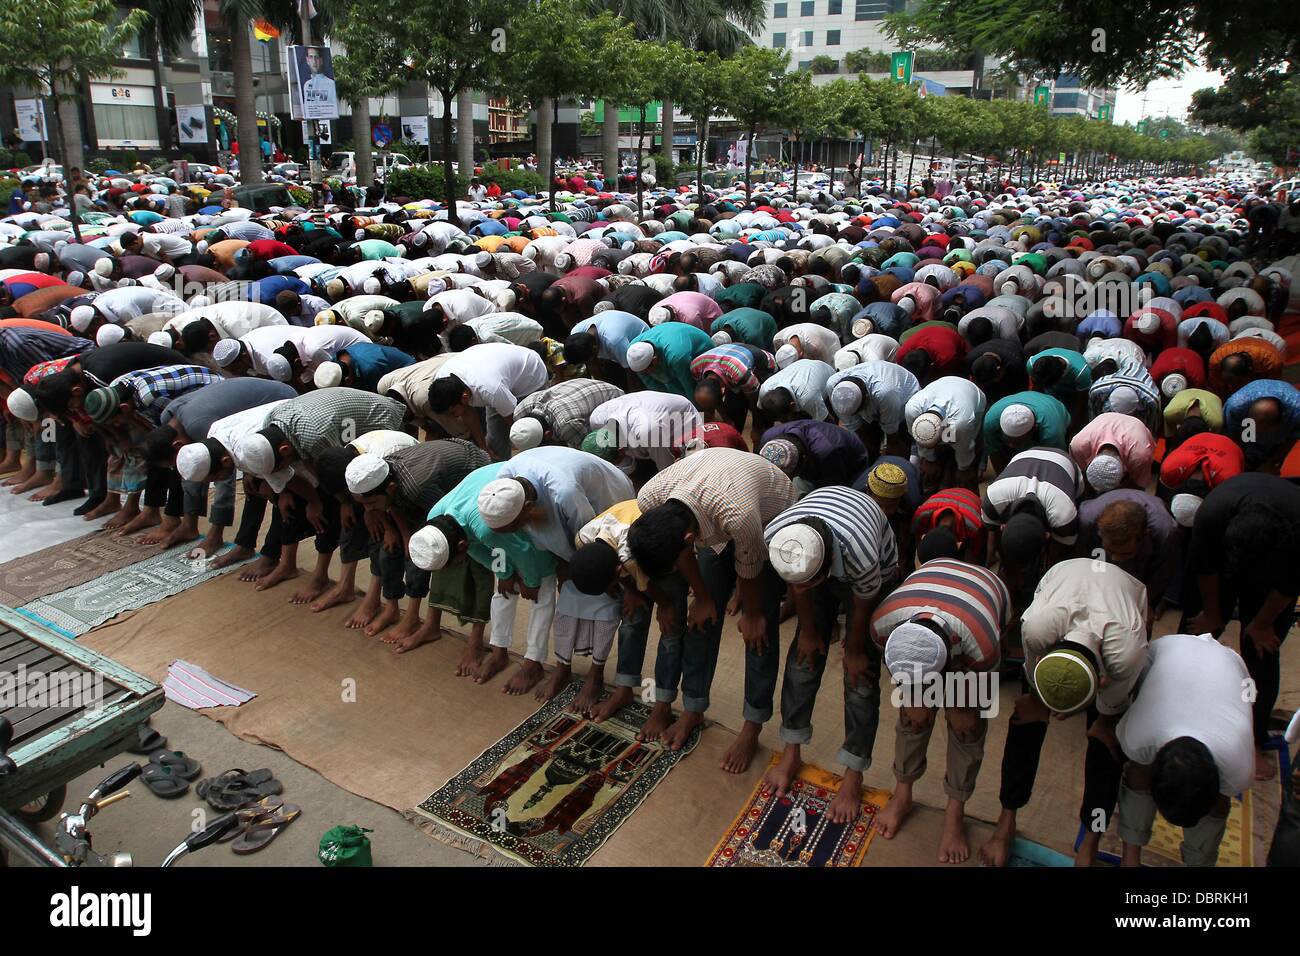 Dhaka, Bangladesh. 2 août 2013 - musulmans dévots offrir la prière de Jummah-tul-Wida (dernier vendredi du Ramadan) sur la rue en face d'une mosquée à Dhaka. Le mois de Ramadan est une période sacrée de jeûne et de prière pour tous les musulmans. Durant le ramadan les musulmans du monde entier rechercher le pardon pour les péchés passés et prier pour guidage. Photo par leadfoto/Alamy Banque D'Images